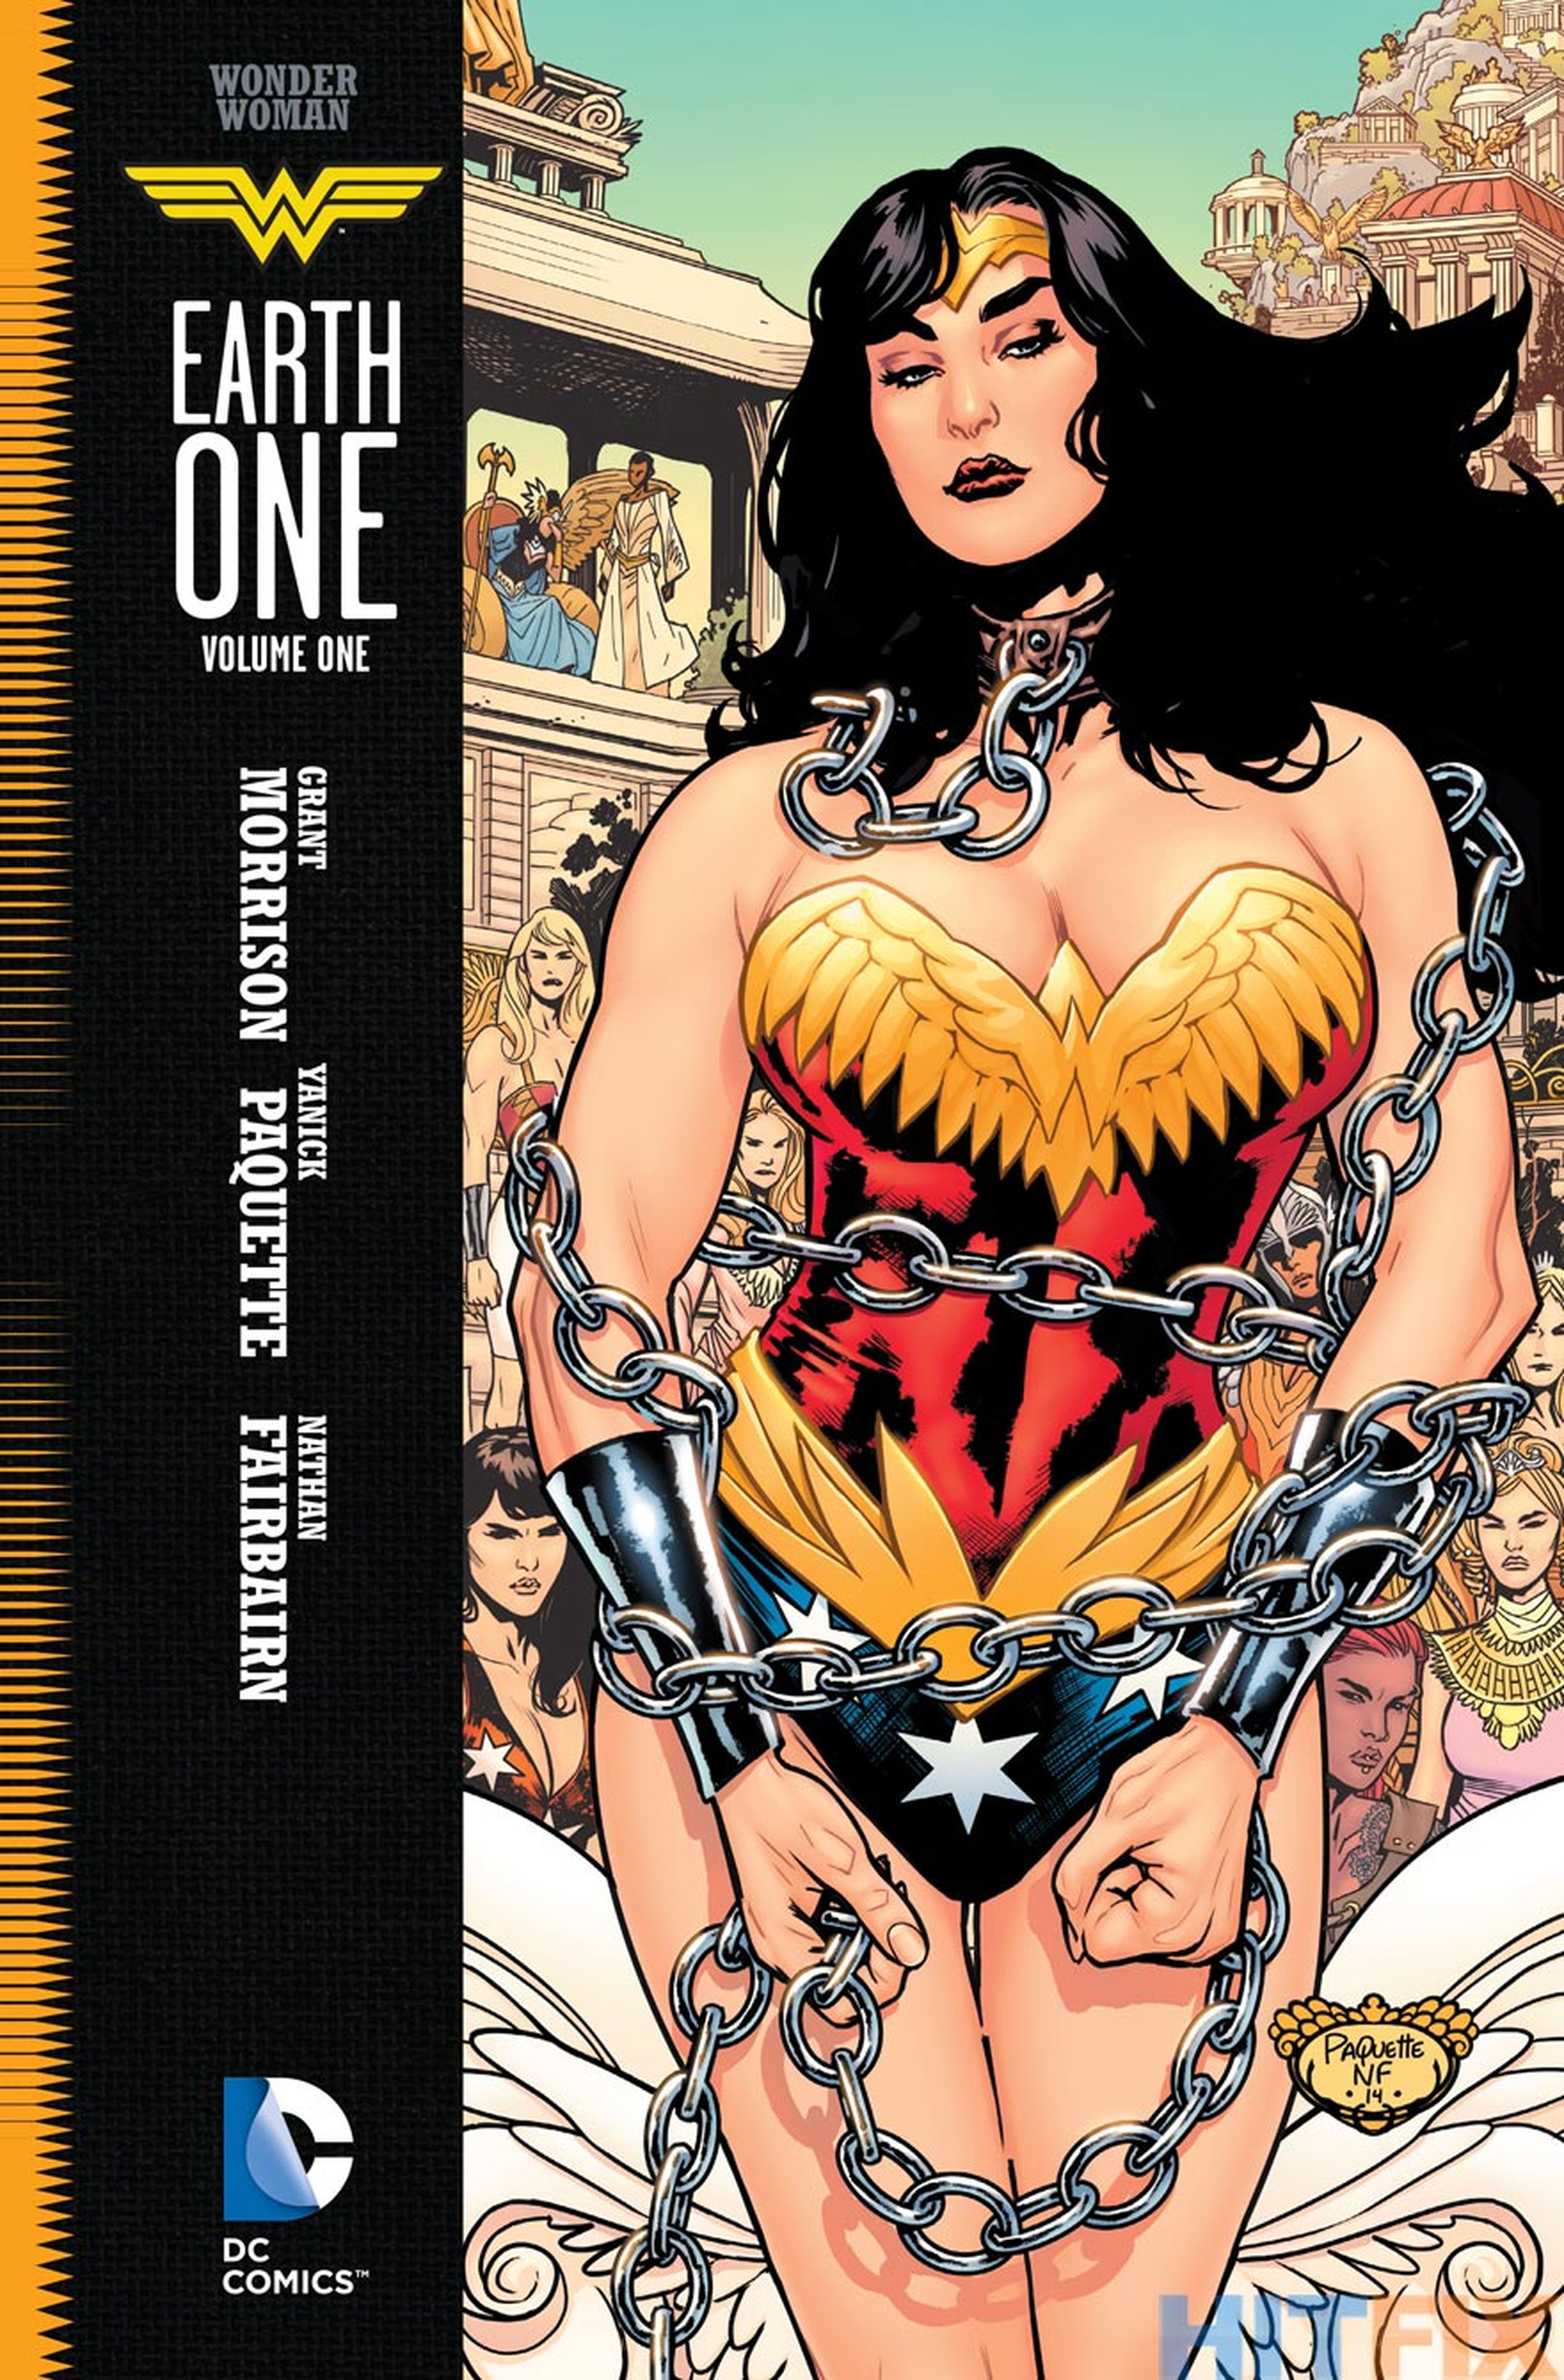 Wonder Woman Tierra Uno: Portada y sinopsis reveladas